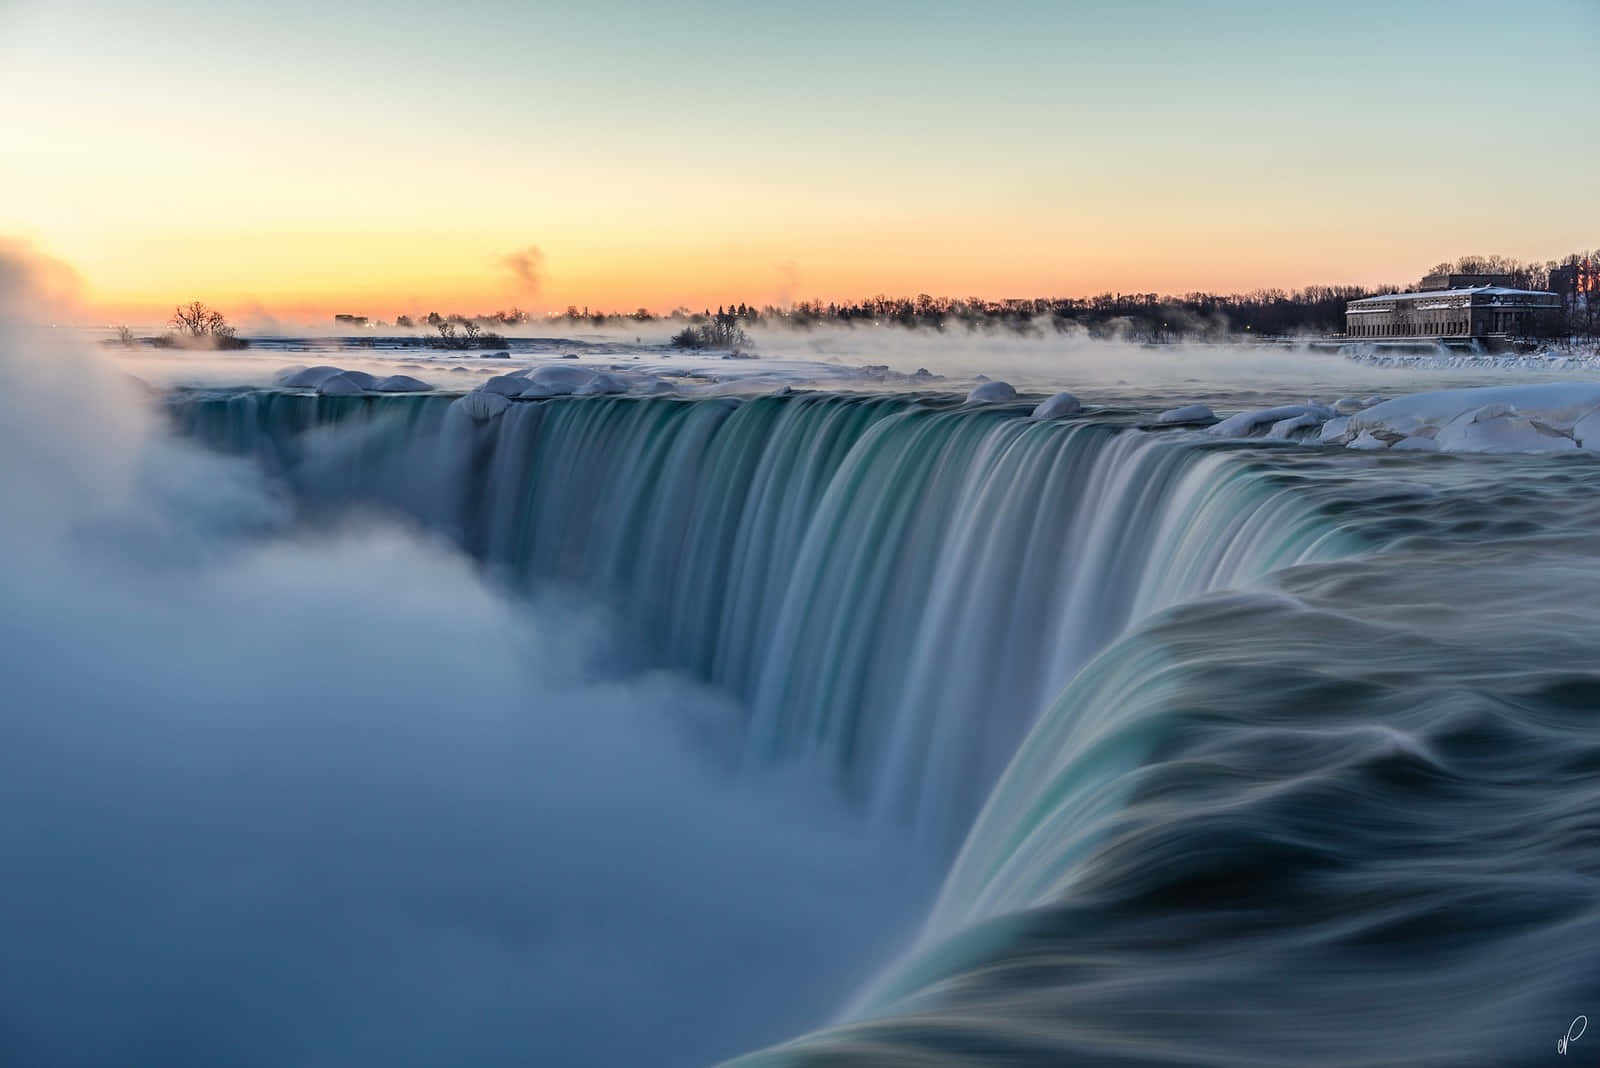 Take in the Majesty of Niagara Falls